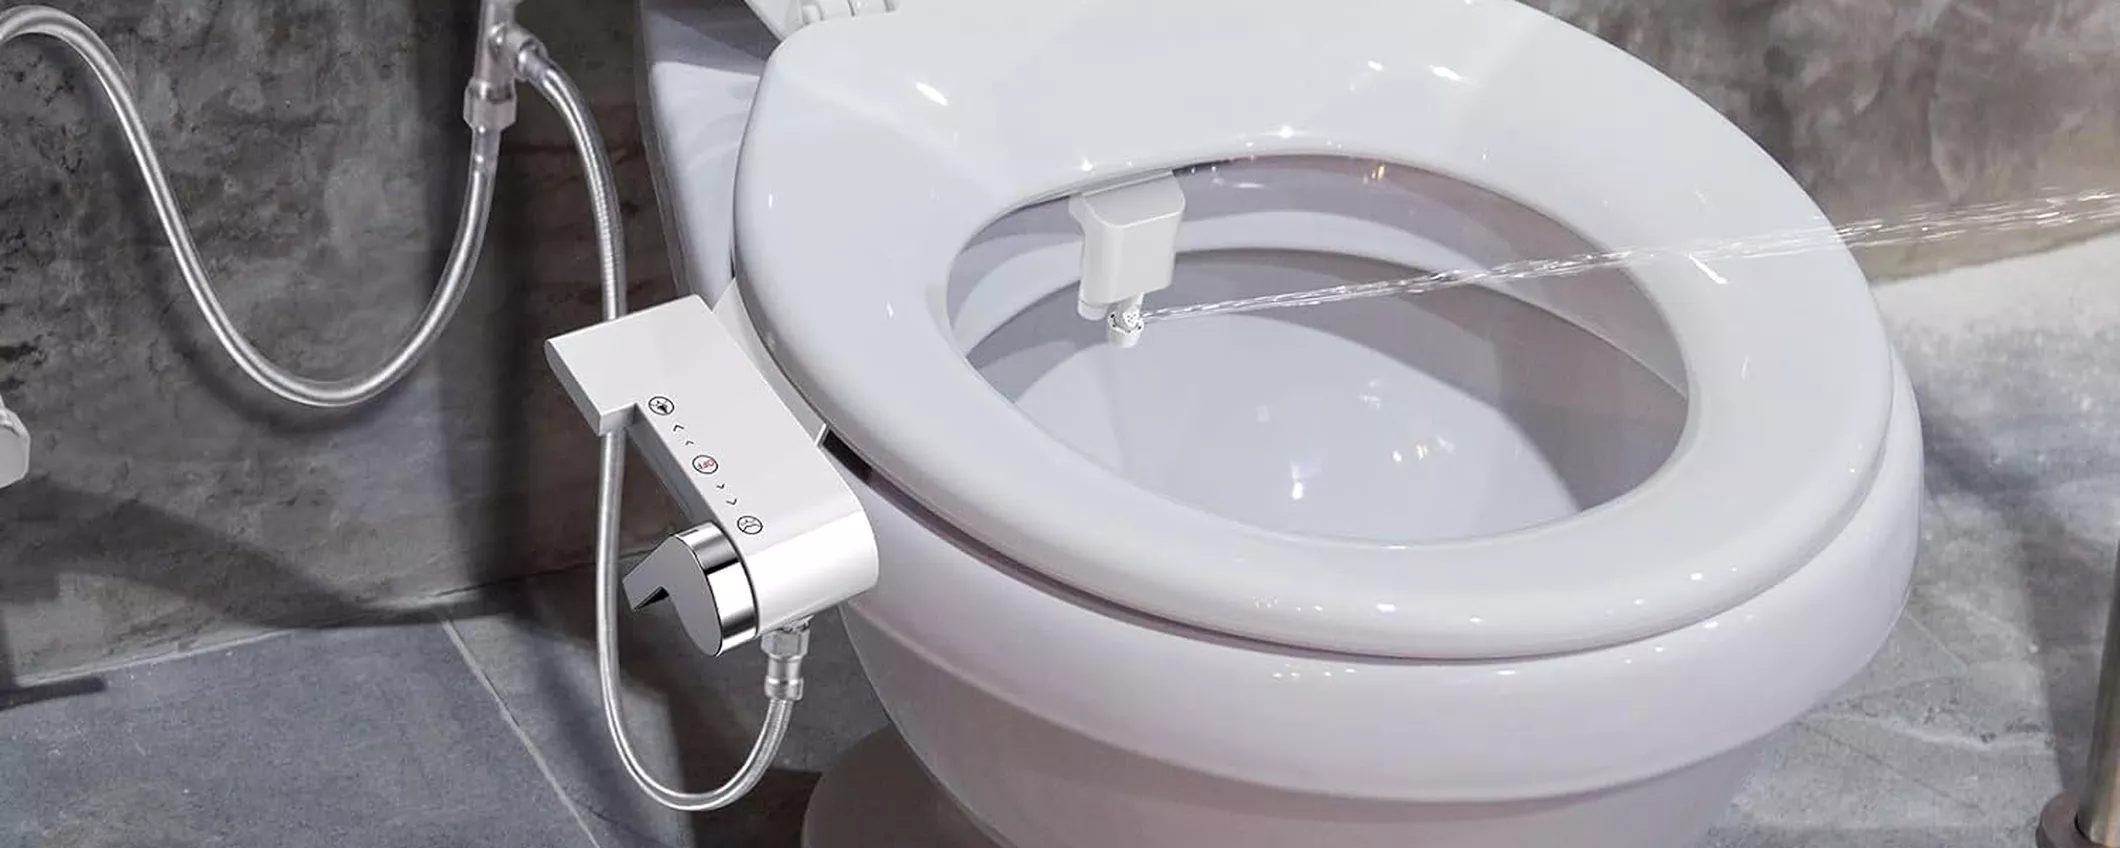 Bidet universale per WC: con 19€ MIGLIORI la tua igiene intima e risparmi carta igienica